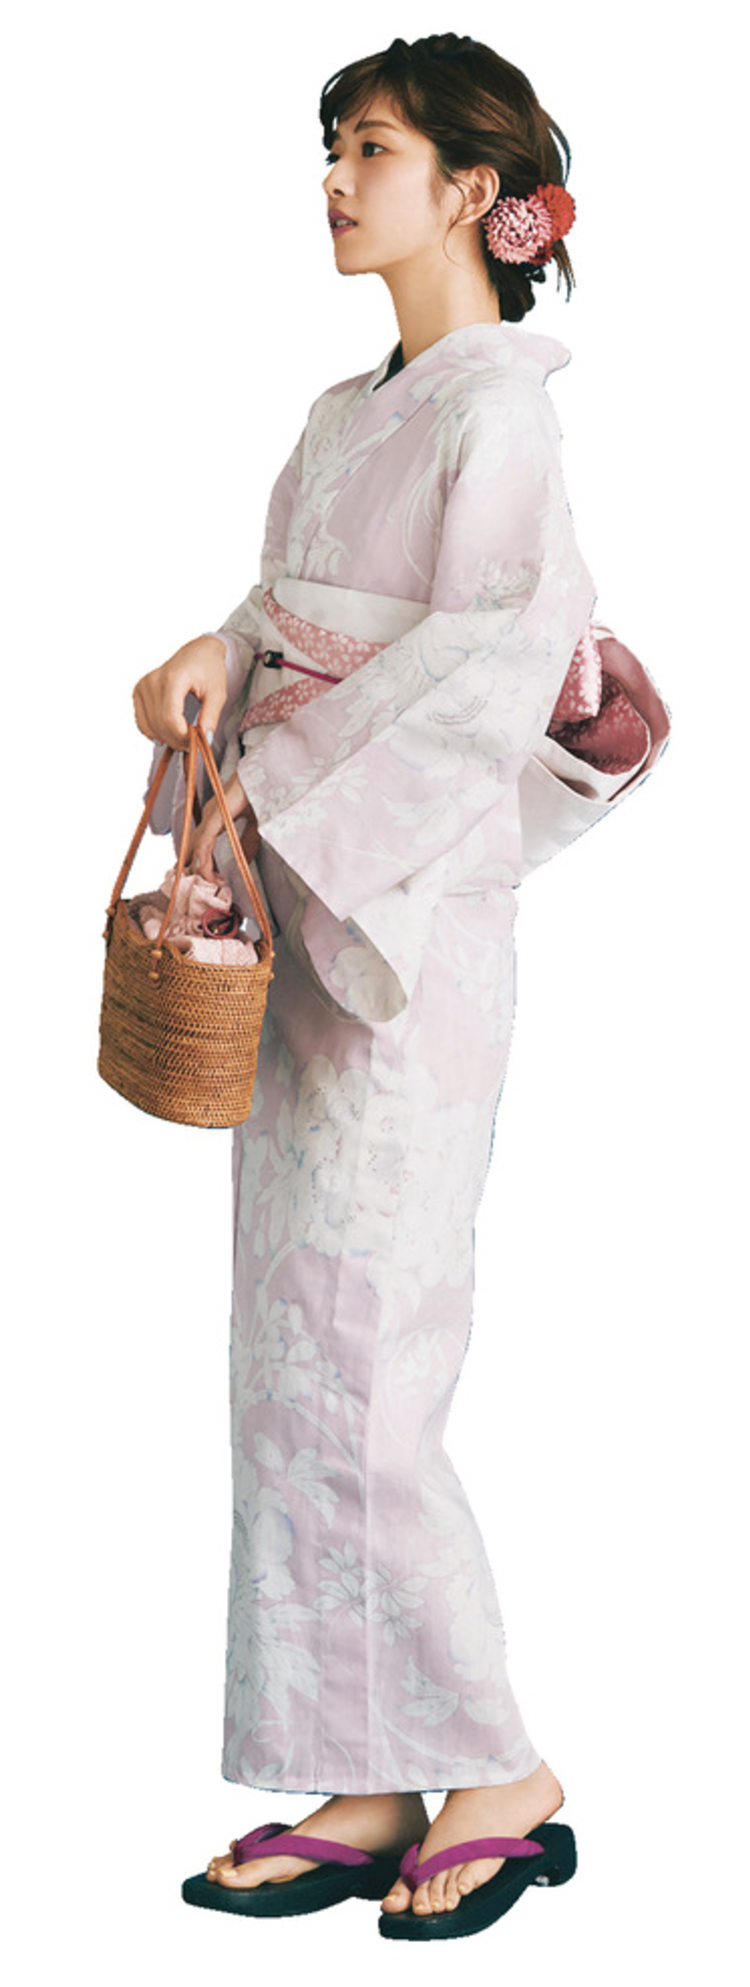 淡いピンク地に、いろい派ながらが繊細に描かれている浴衣を着用したモデルを、左側から撮影した写真。手にはかごバッグを持っており、草履の鼻緒は紫色。また、ピンクと赤の花の髪飾りをしている。